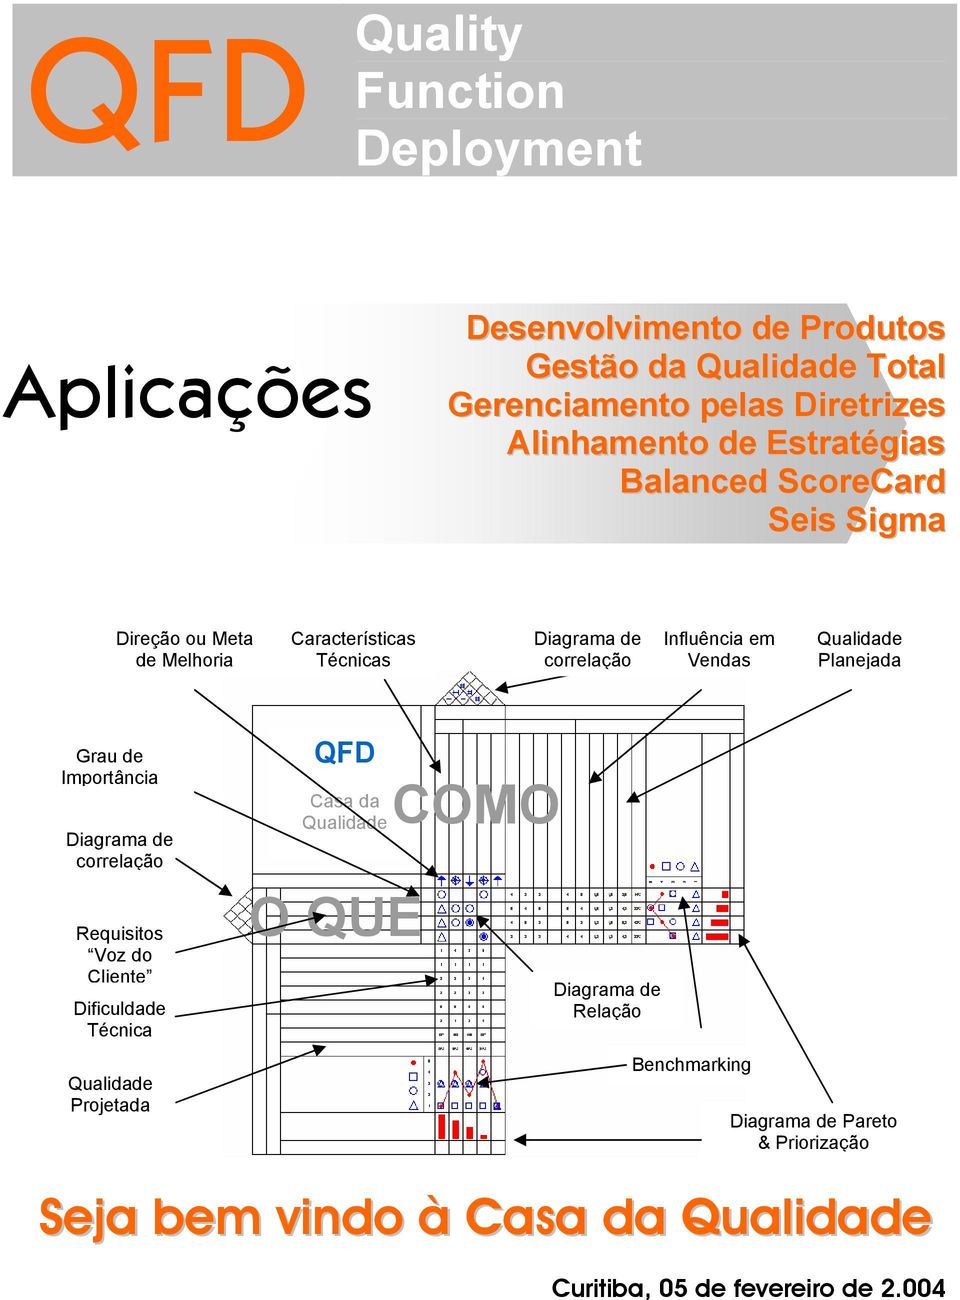 Qualidade Planejada Grau de Importância Diagrama de correlação Requisitos Voz do Cliente Dificuldade Técnica Qualidade Projetada QFD Casa da